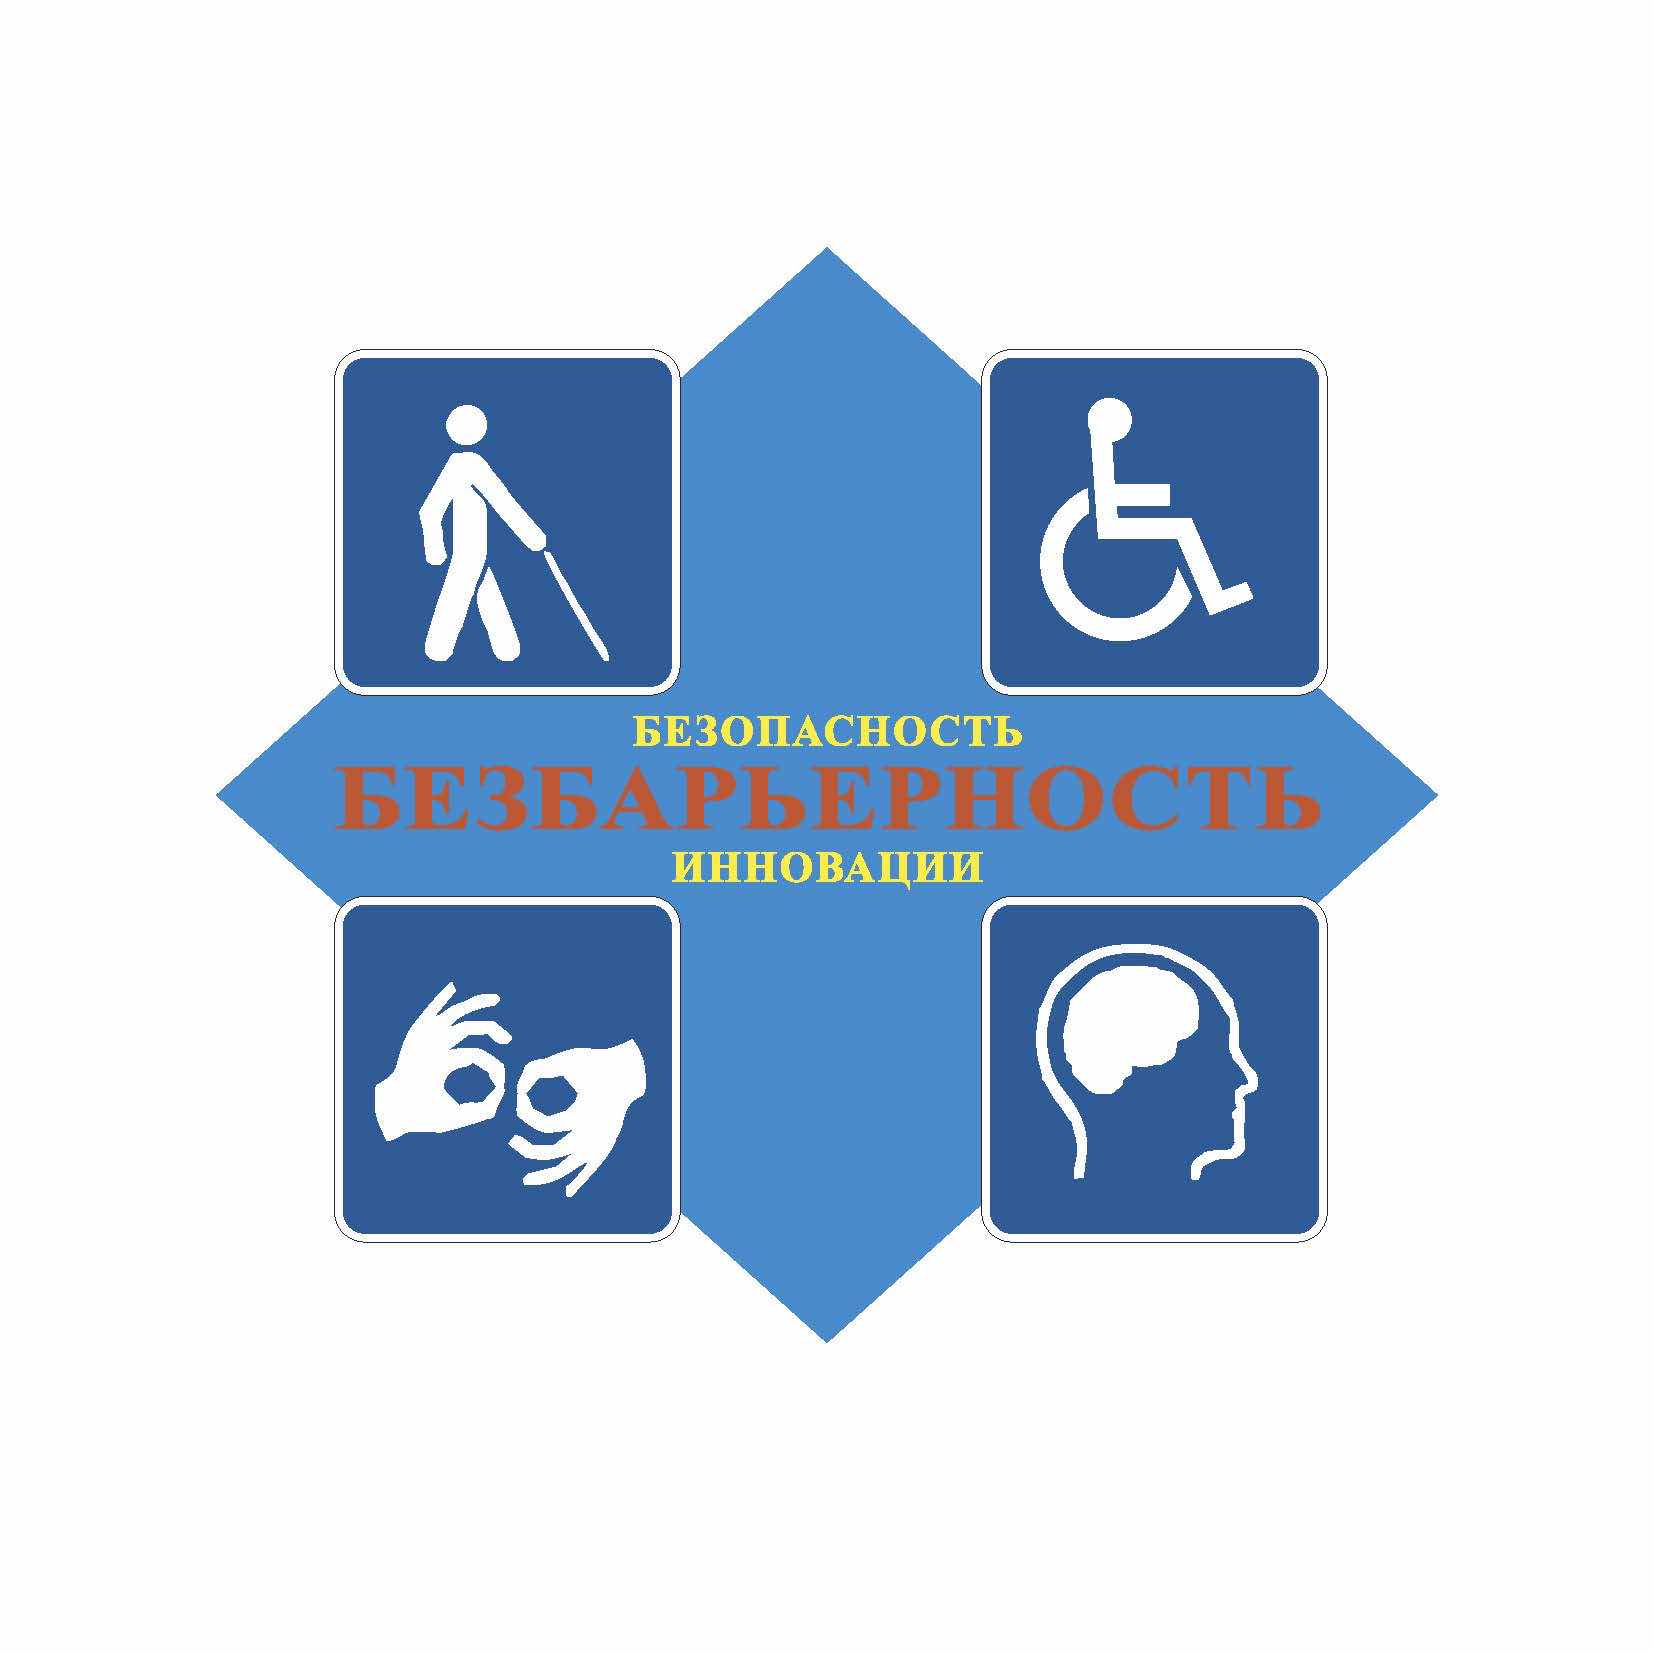 Знак соответствия представляет собой ромб синего цвета, изображающий объекты и услуги в социально значимых сферах деятельности для инвалидов и других маломобильных групп населения, на которых обеспечены условия безбарьерной среды.